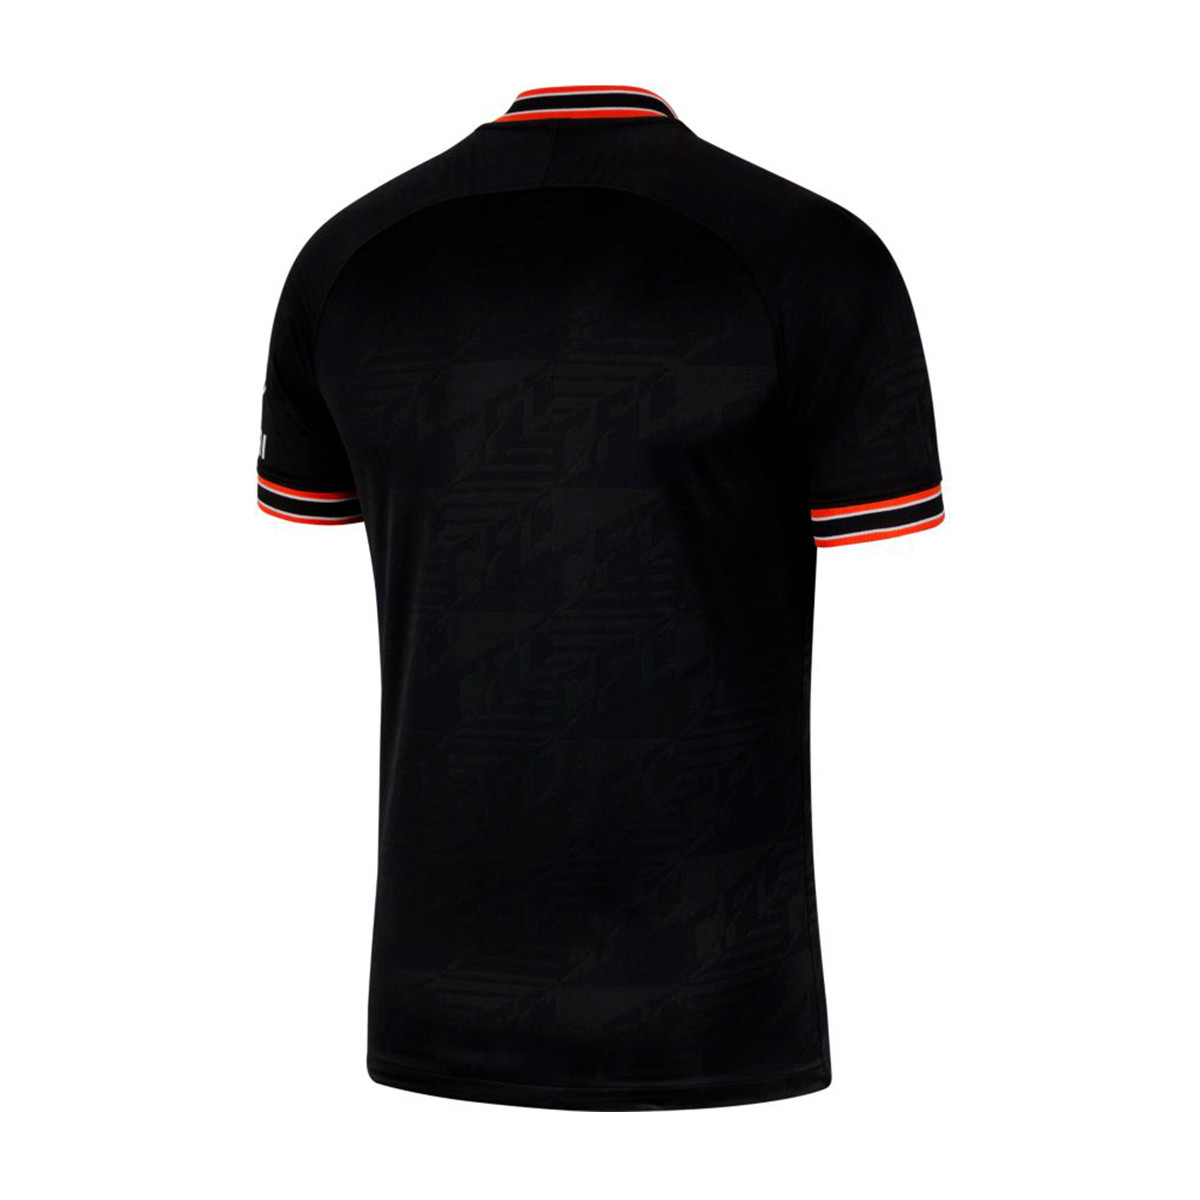 chelsea black jersey